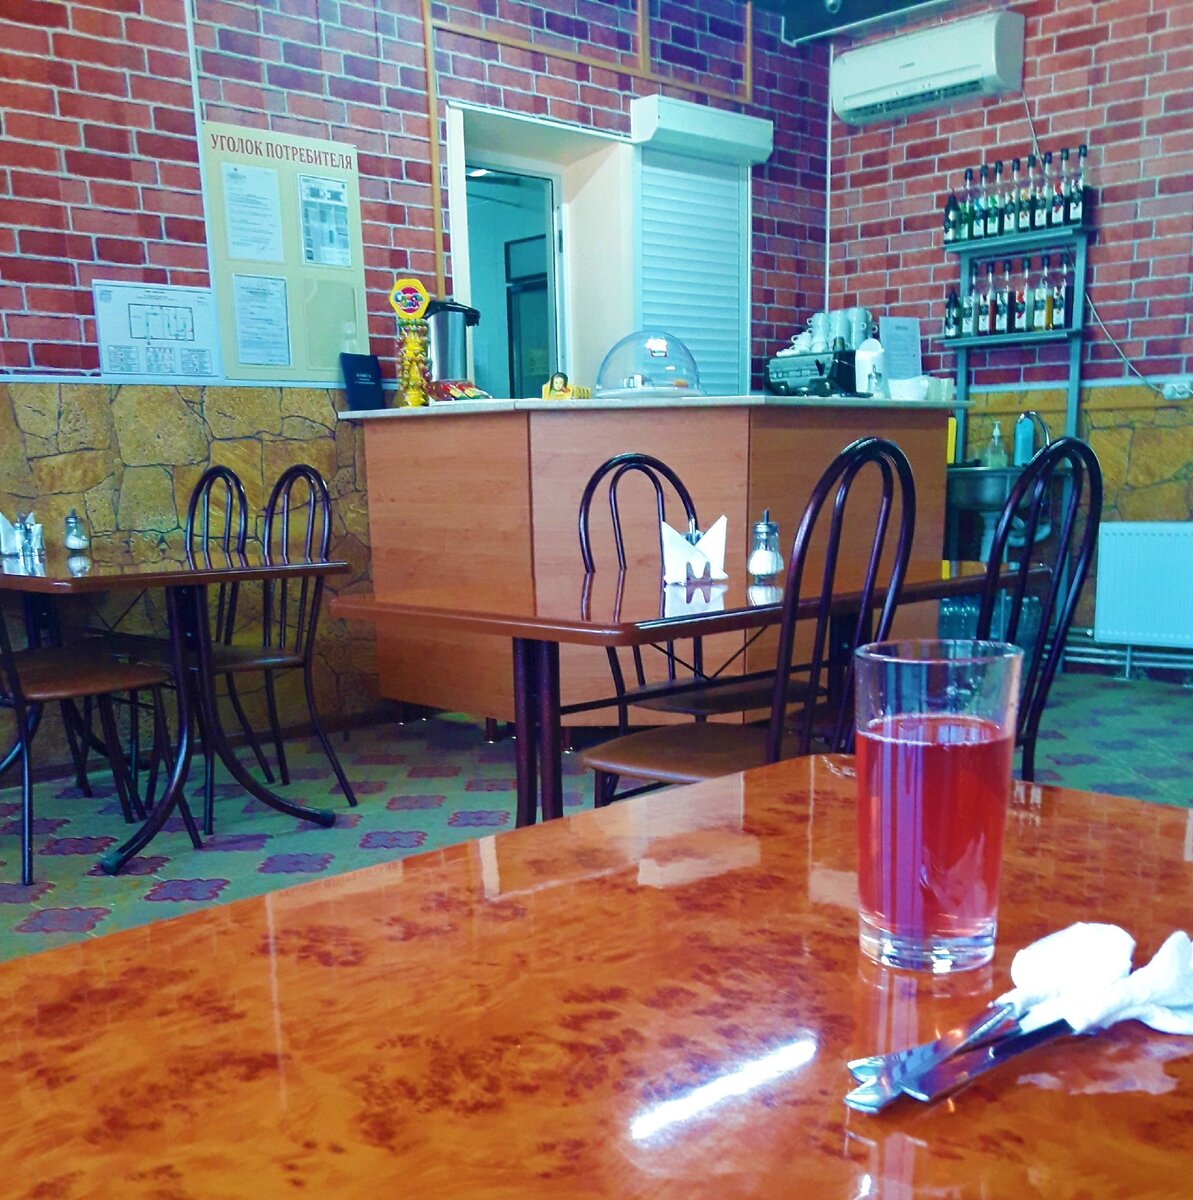 «Вкусное» место по дороге в Крым, поели в кафе «Перекресток» армянские вареники, заплатили за обед 679 руб.